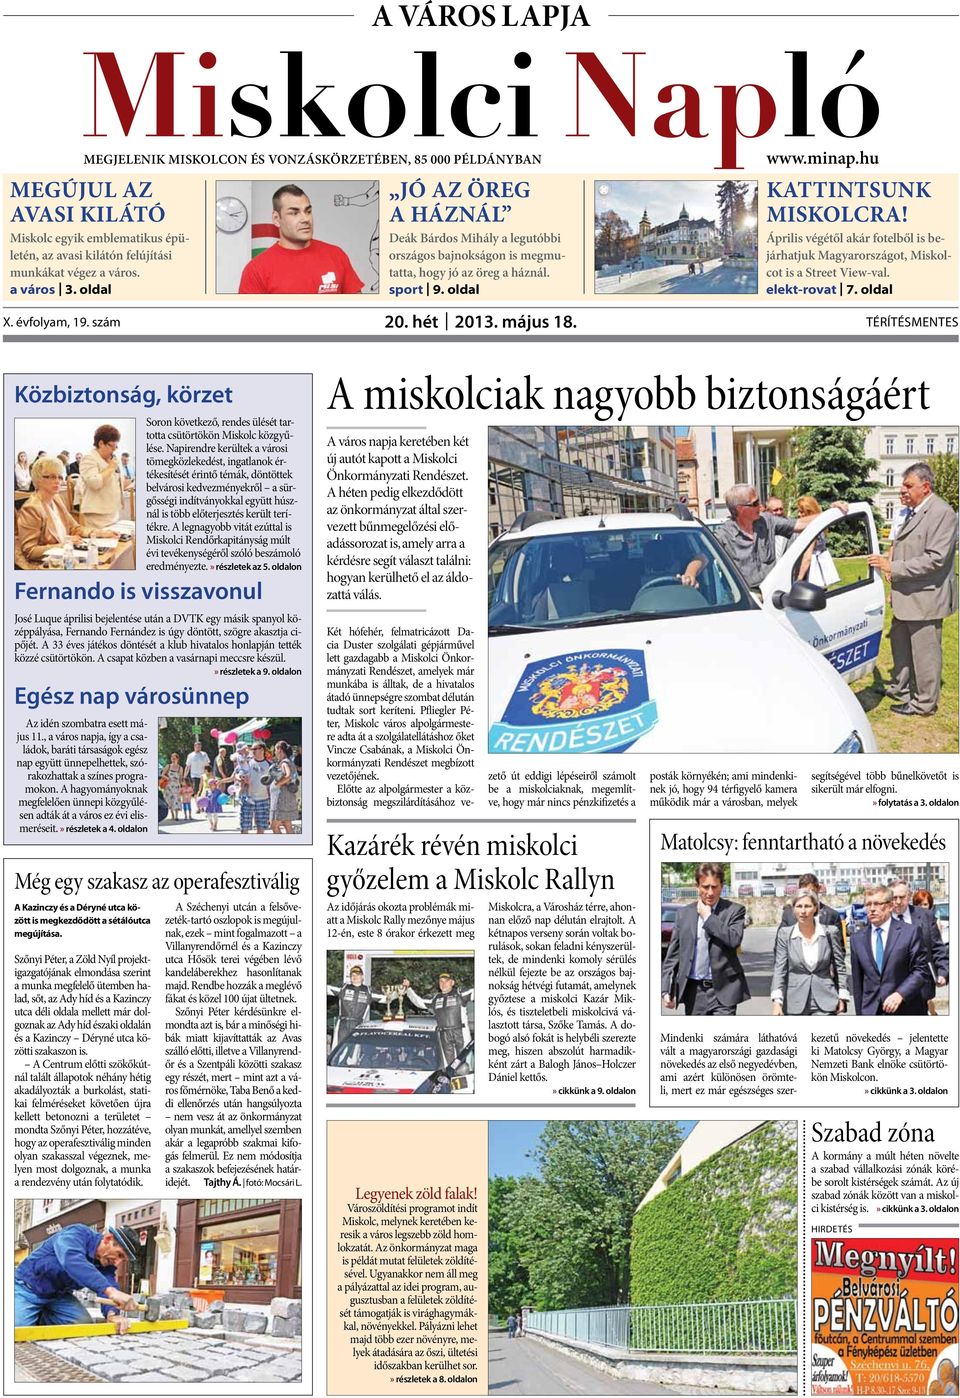 április végétől akár fotelből is bejárhatjuk Magyarországot, Miskolcot is a street view-val. elekt-rovat 7. oldal X. évfolyam, 19. szám 20. hét 2013. május 18.